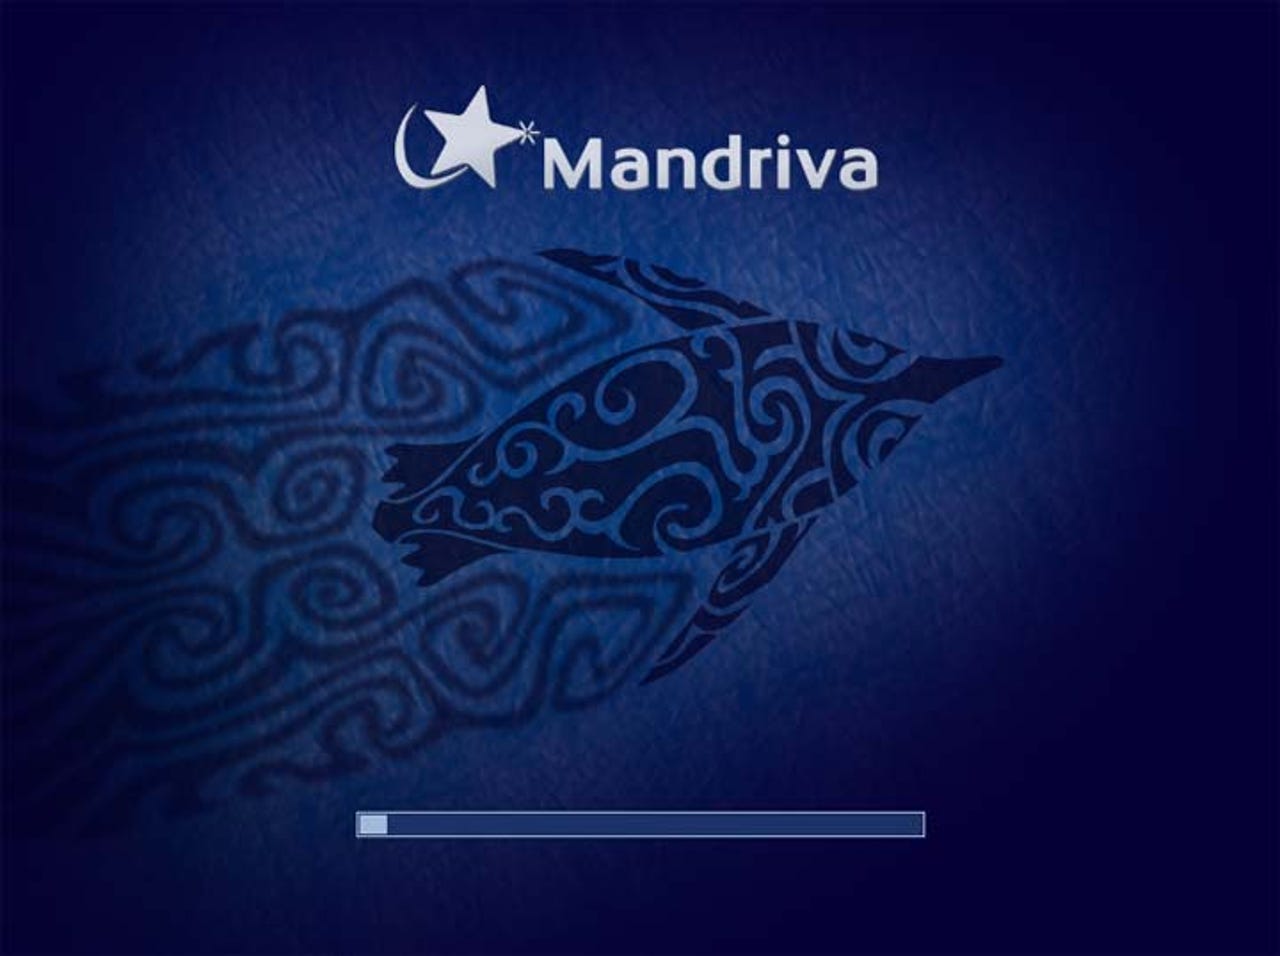 mandriva-2010-beta-screenshots14.jpg